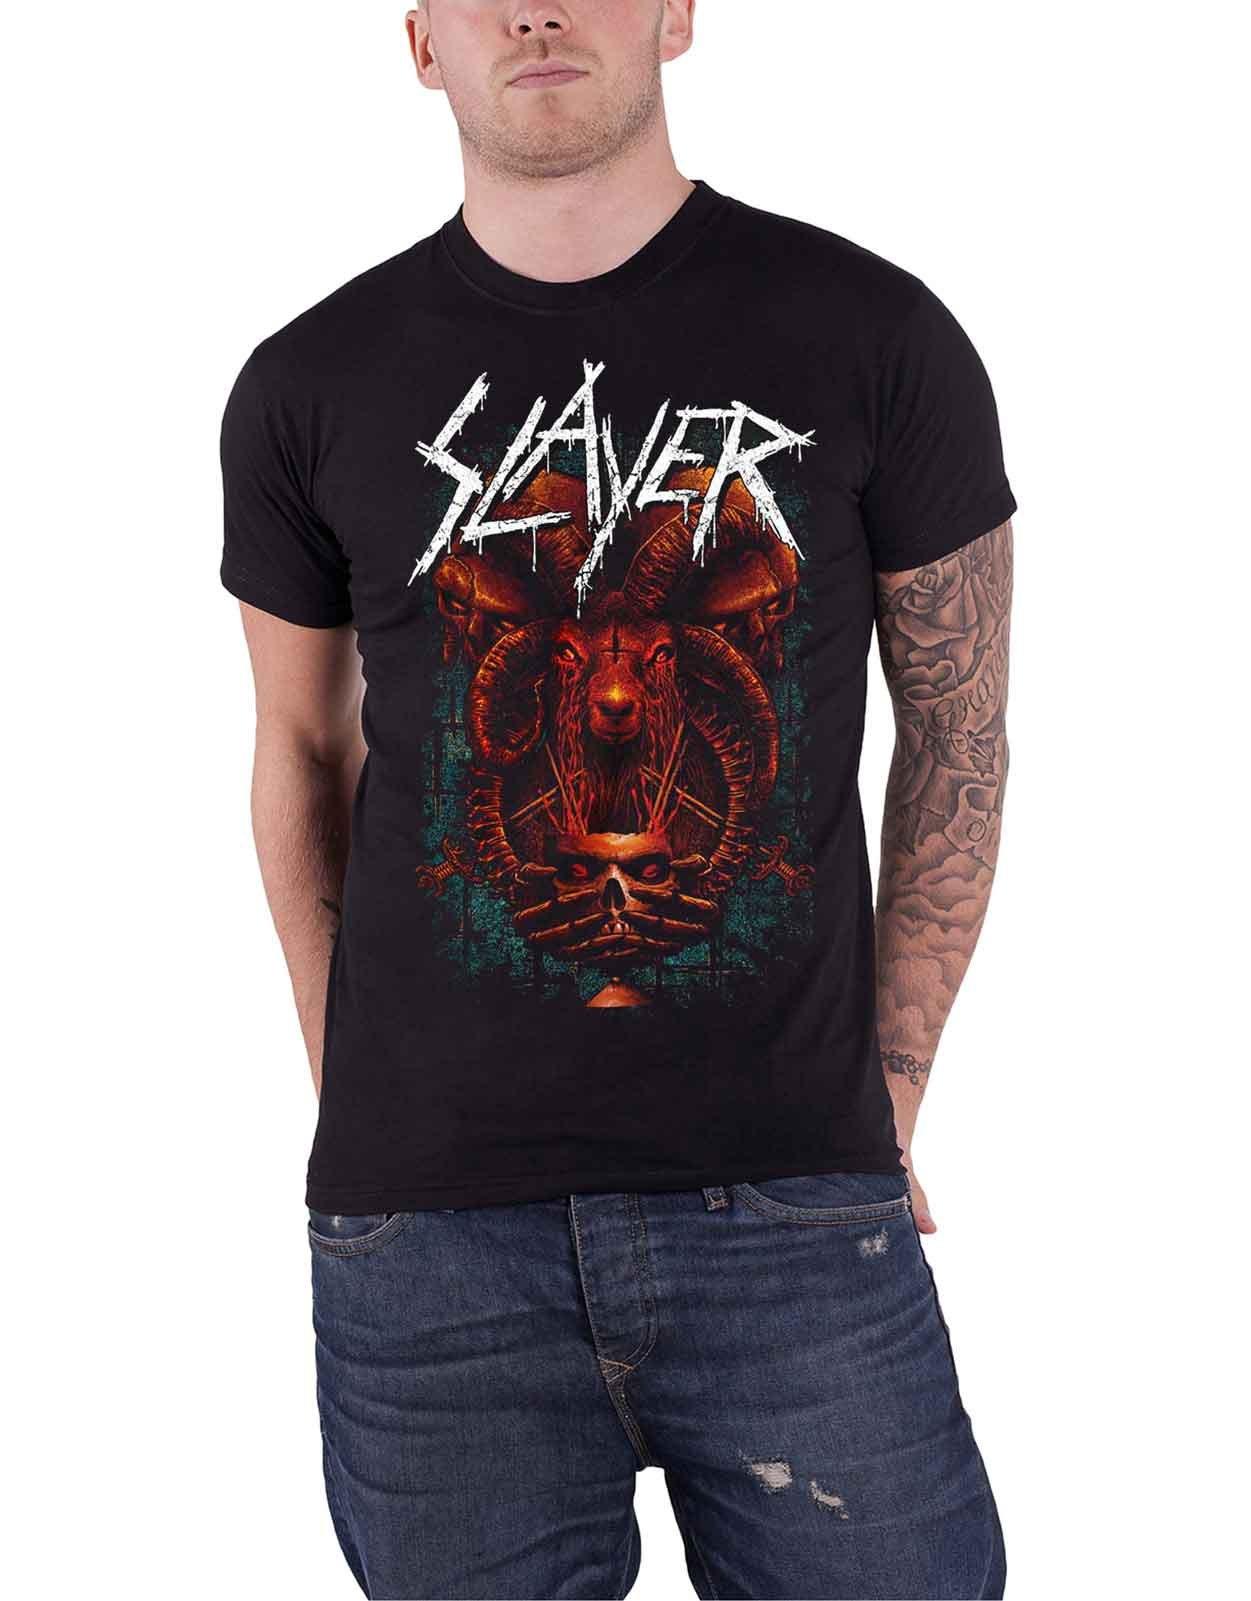 Предлагая футболку с головой барана Slayer, черный